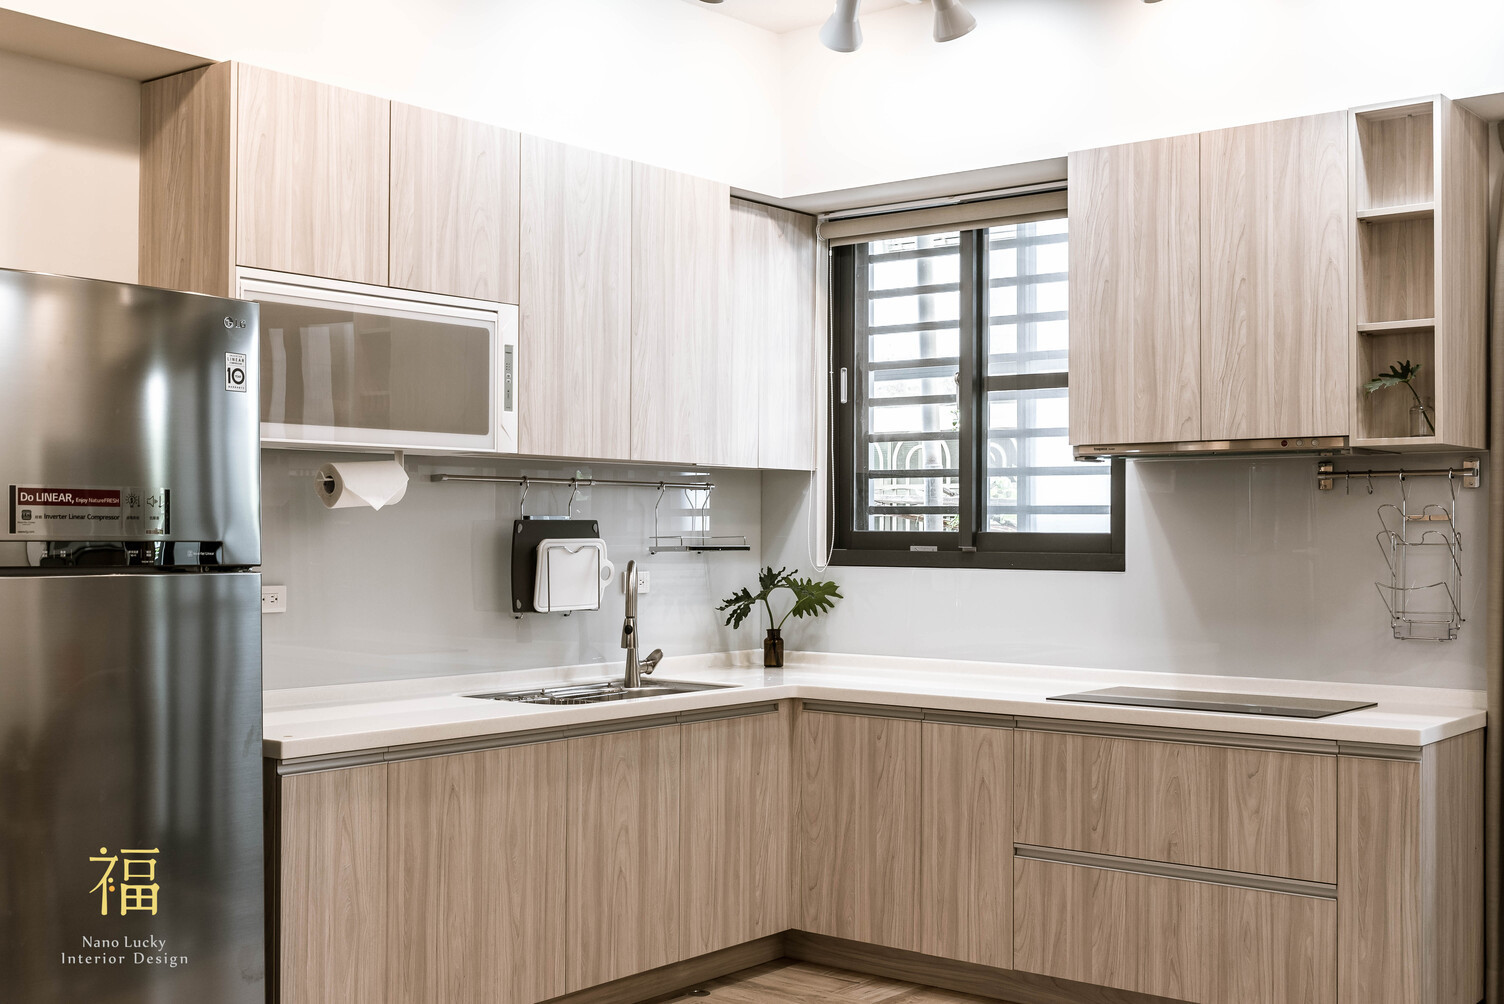 Nanolucky小福砌空間設計-小蘋果之家-住宅設計-現代北歐風-舊屋翻新-廚房系統廚櫃